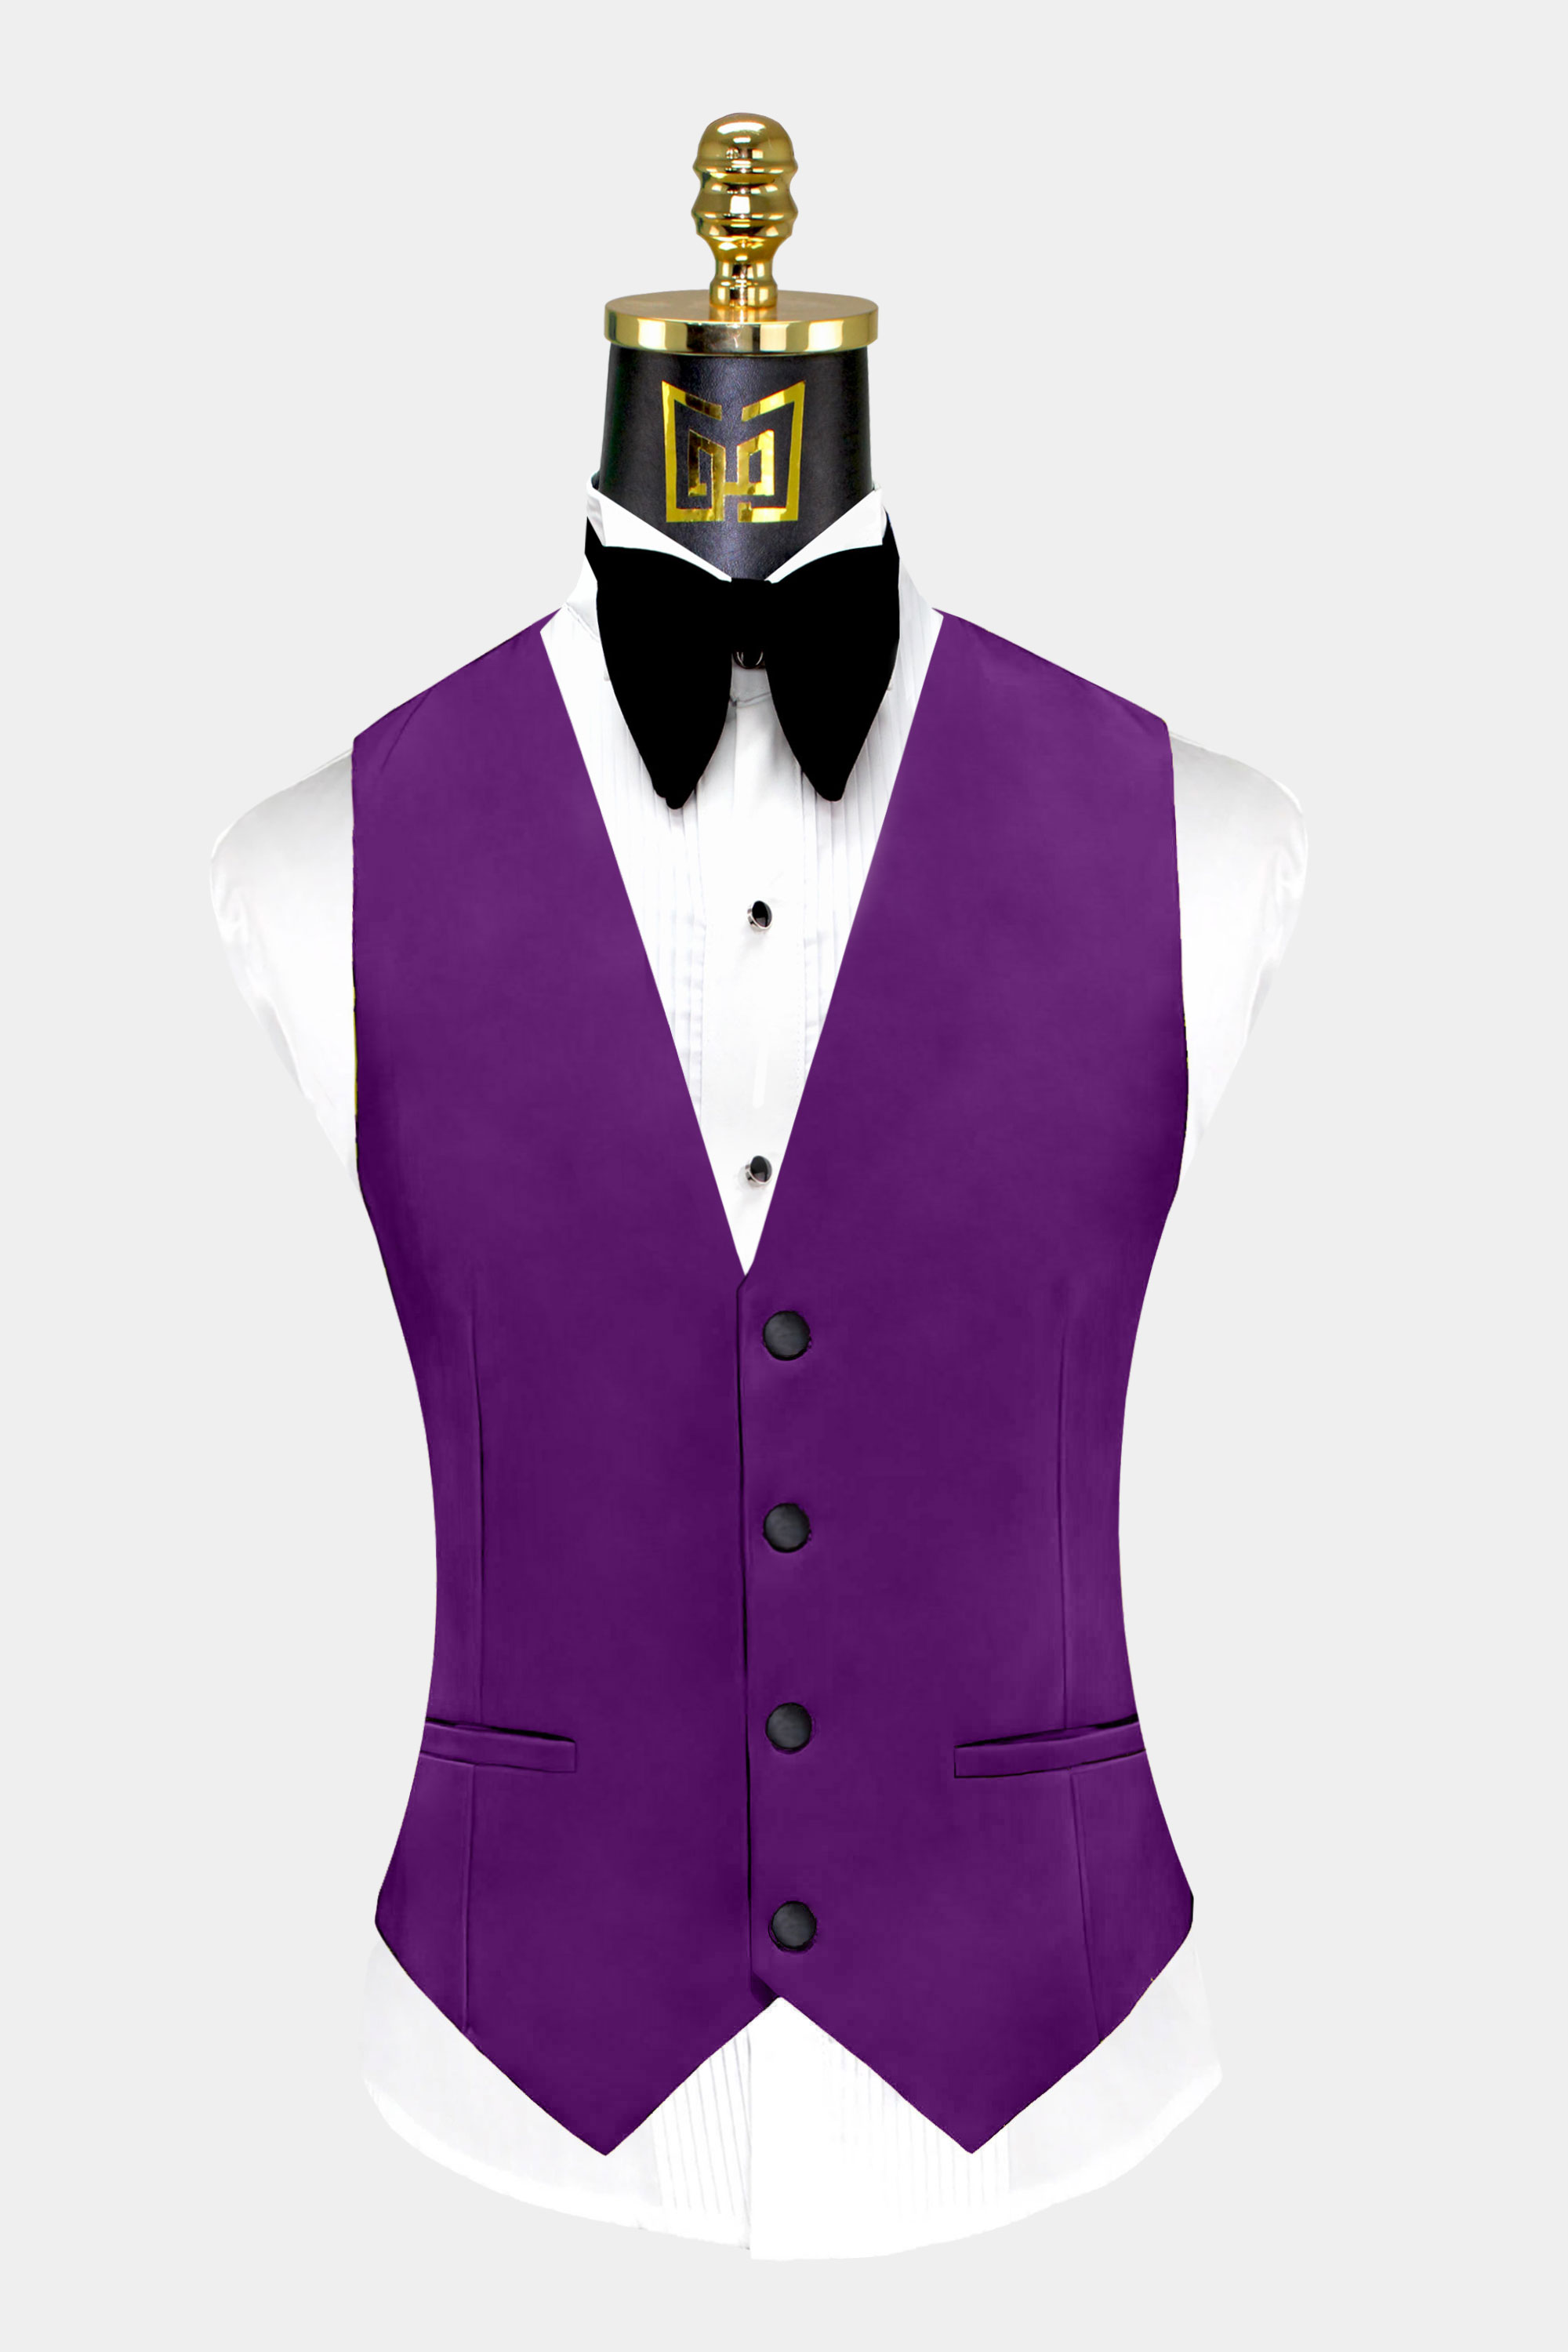 Mens-Purple-Tuxedo-Vest-Groom-Wedding-Suit-Waistcoat-from-Gentlemansguru.com